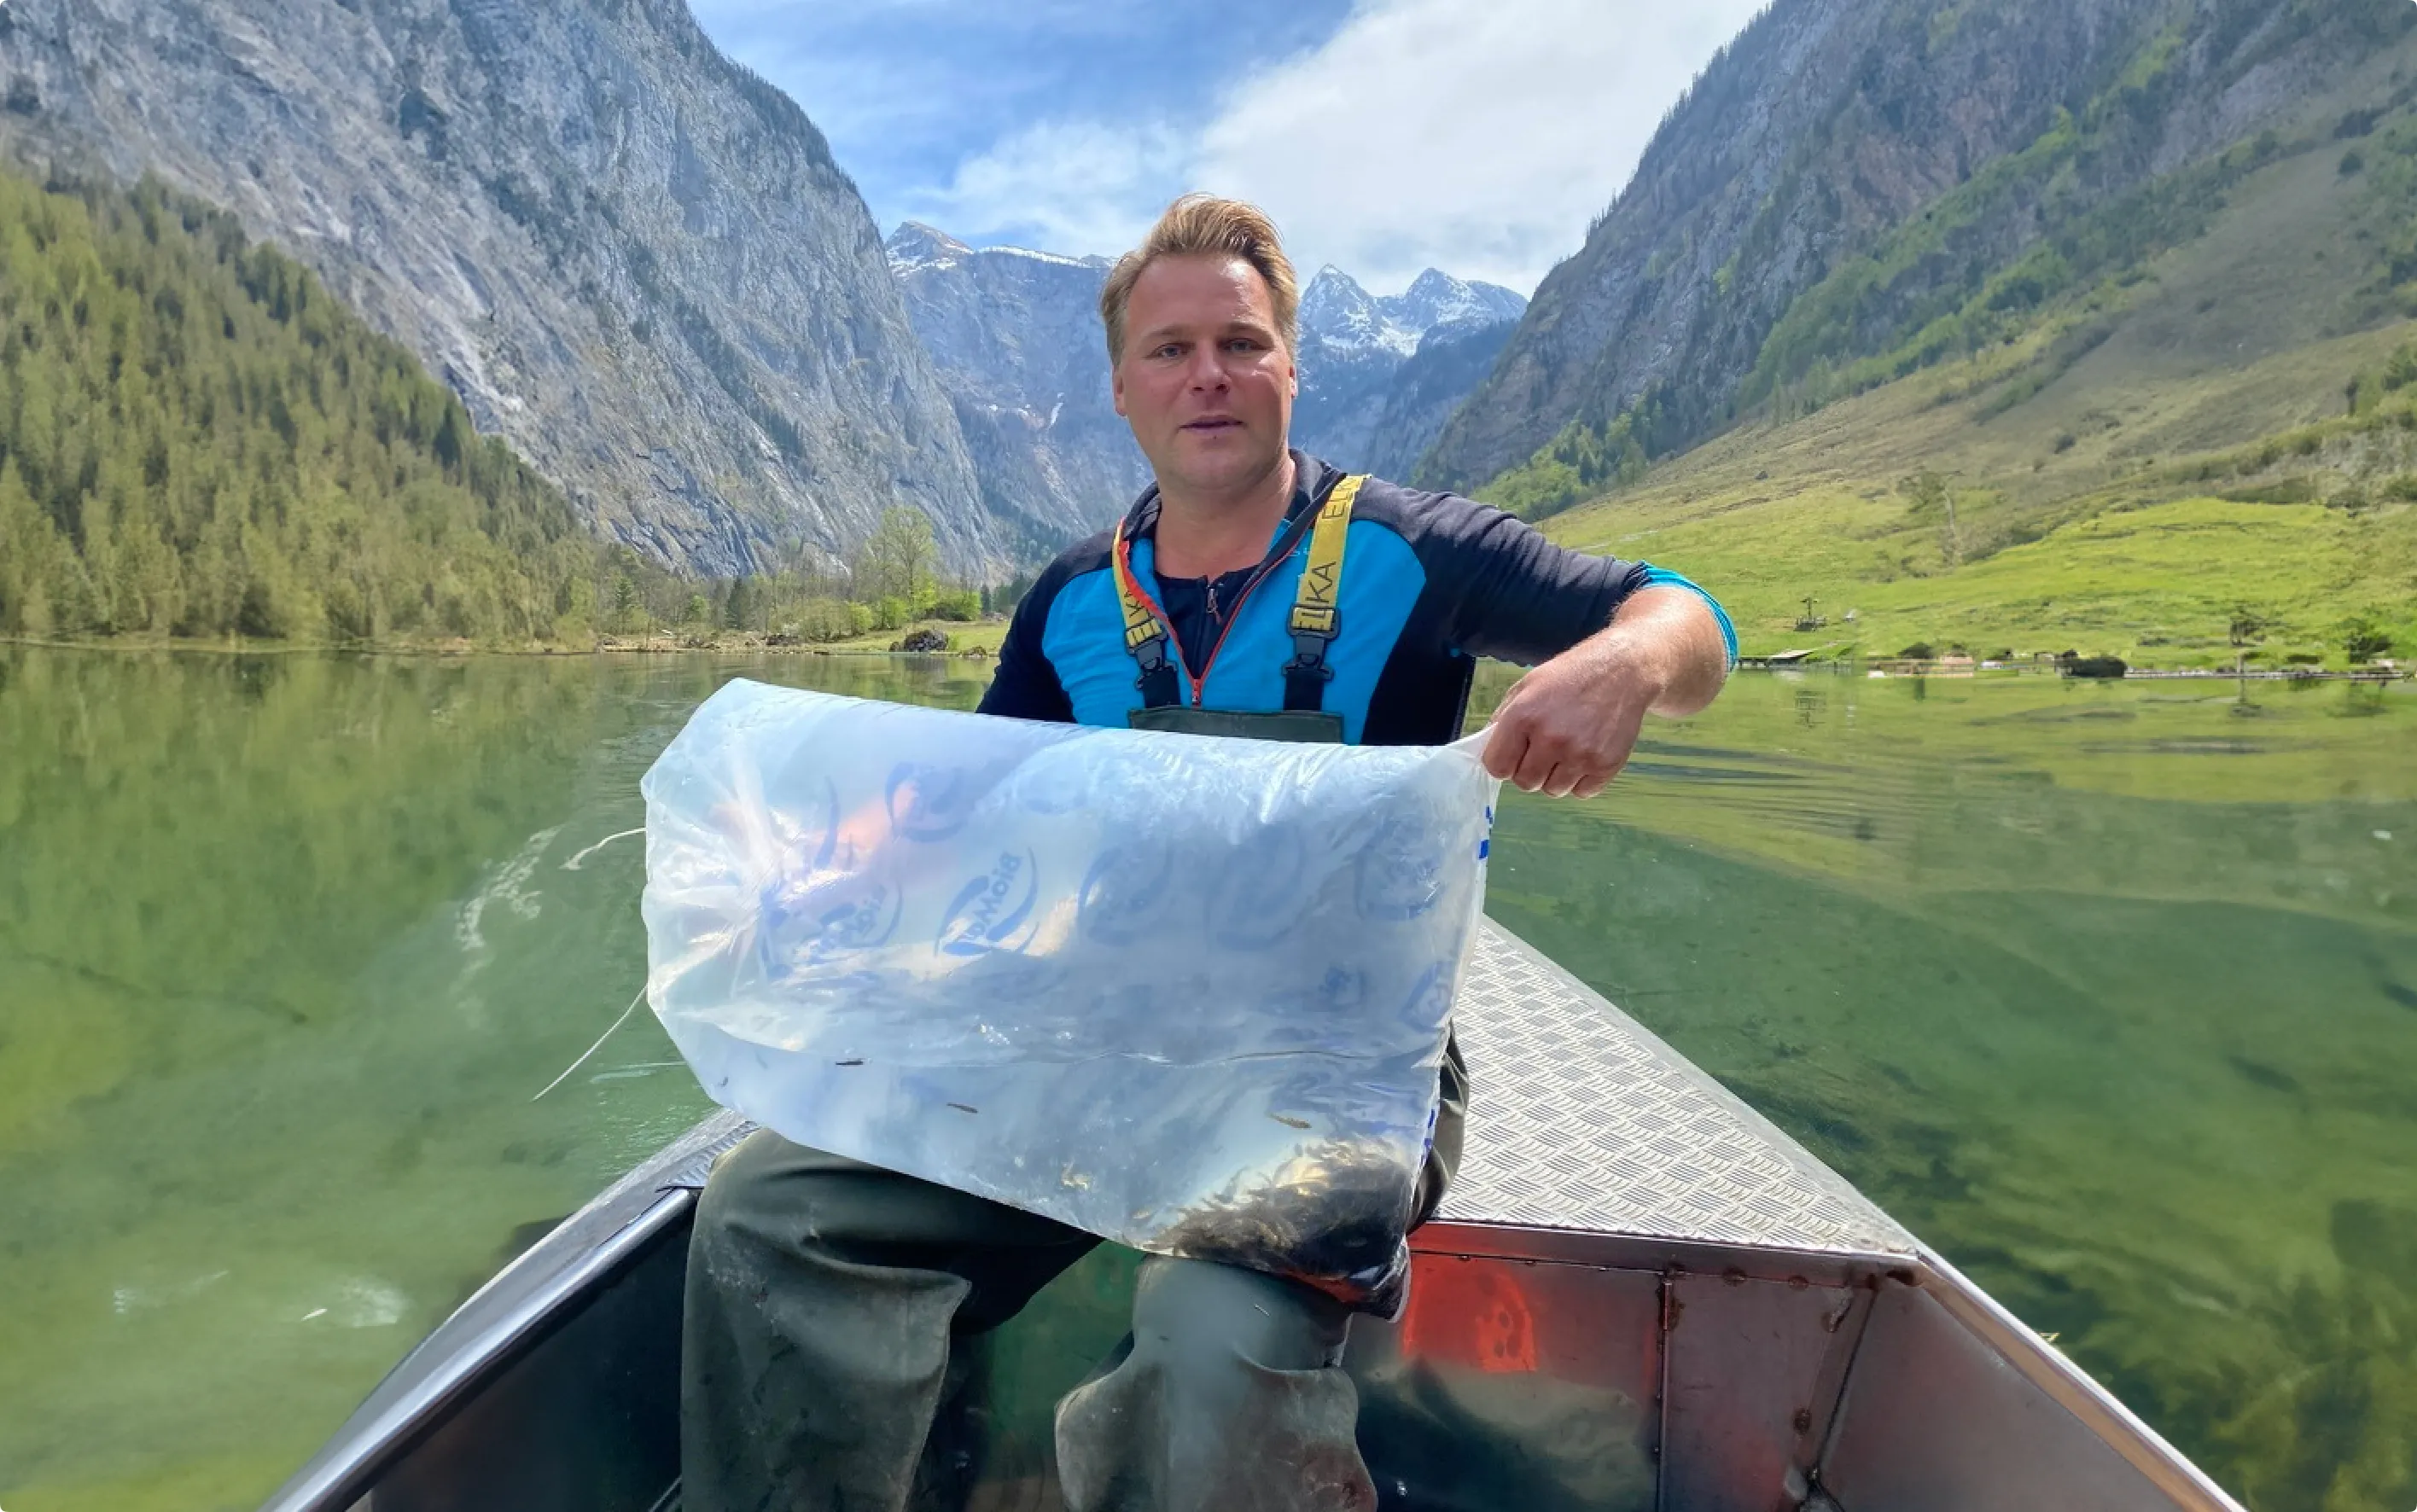 Ein Mann sitzt in einem kleinen Boot und hält einen großen, mit Wasser und Fischen gefüllten, Plastikbeutel. Das Boot schwimmt auf einem See. Im Hintergrund sind Berge zu sehen.